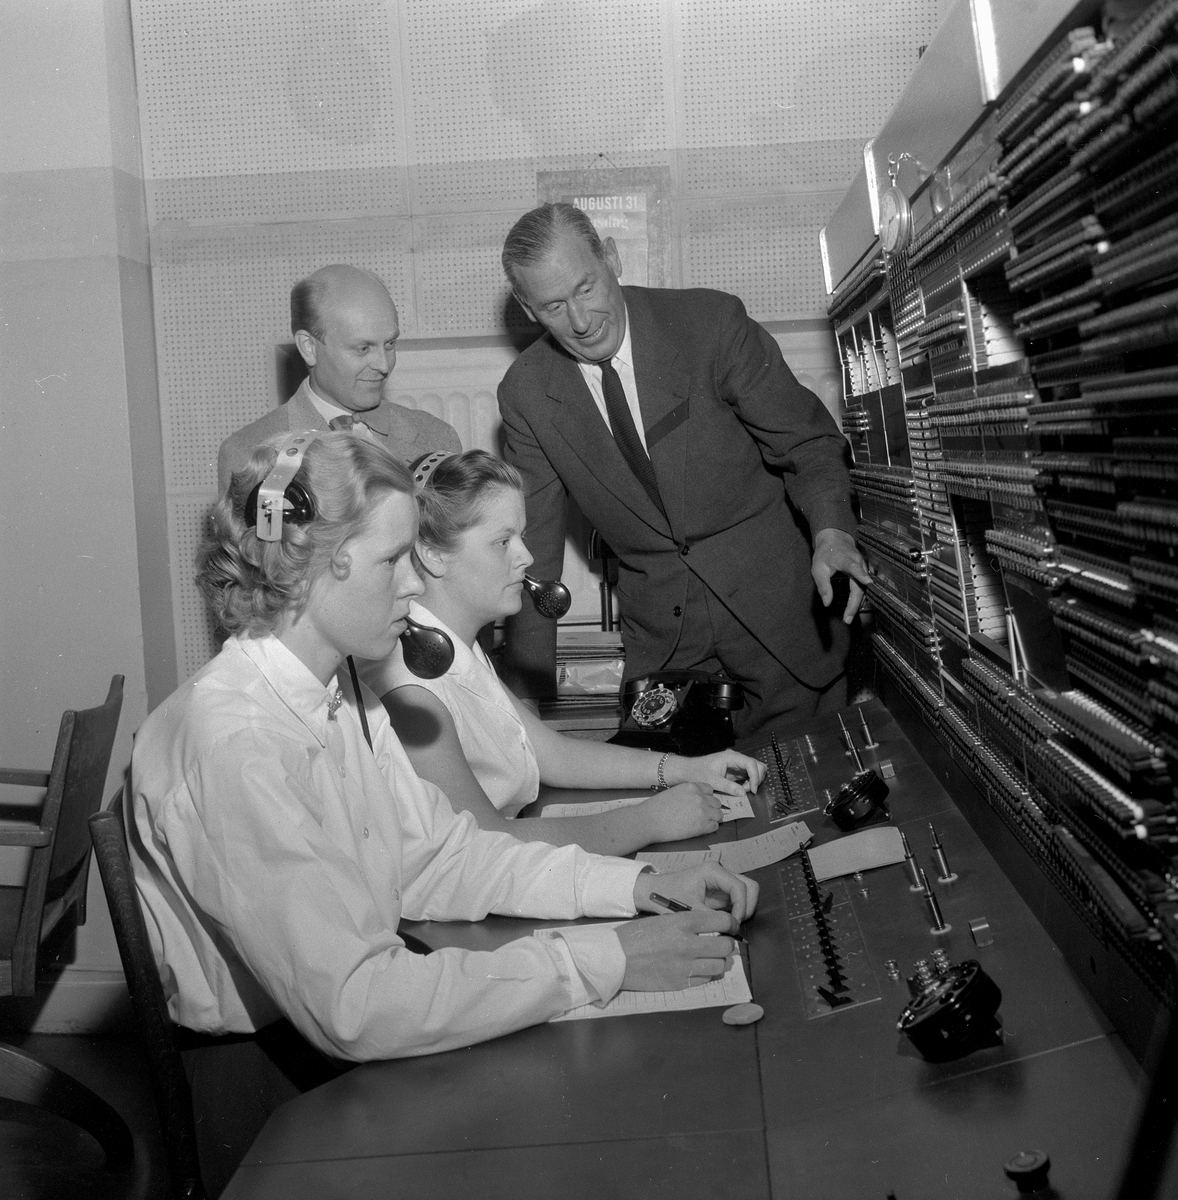 Televerkets omkoppling.
Augusti 1956.